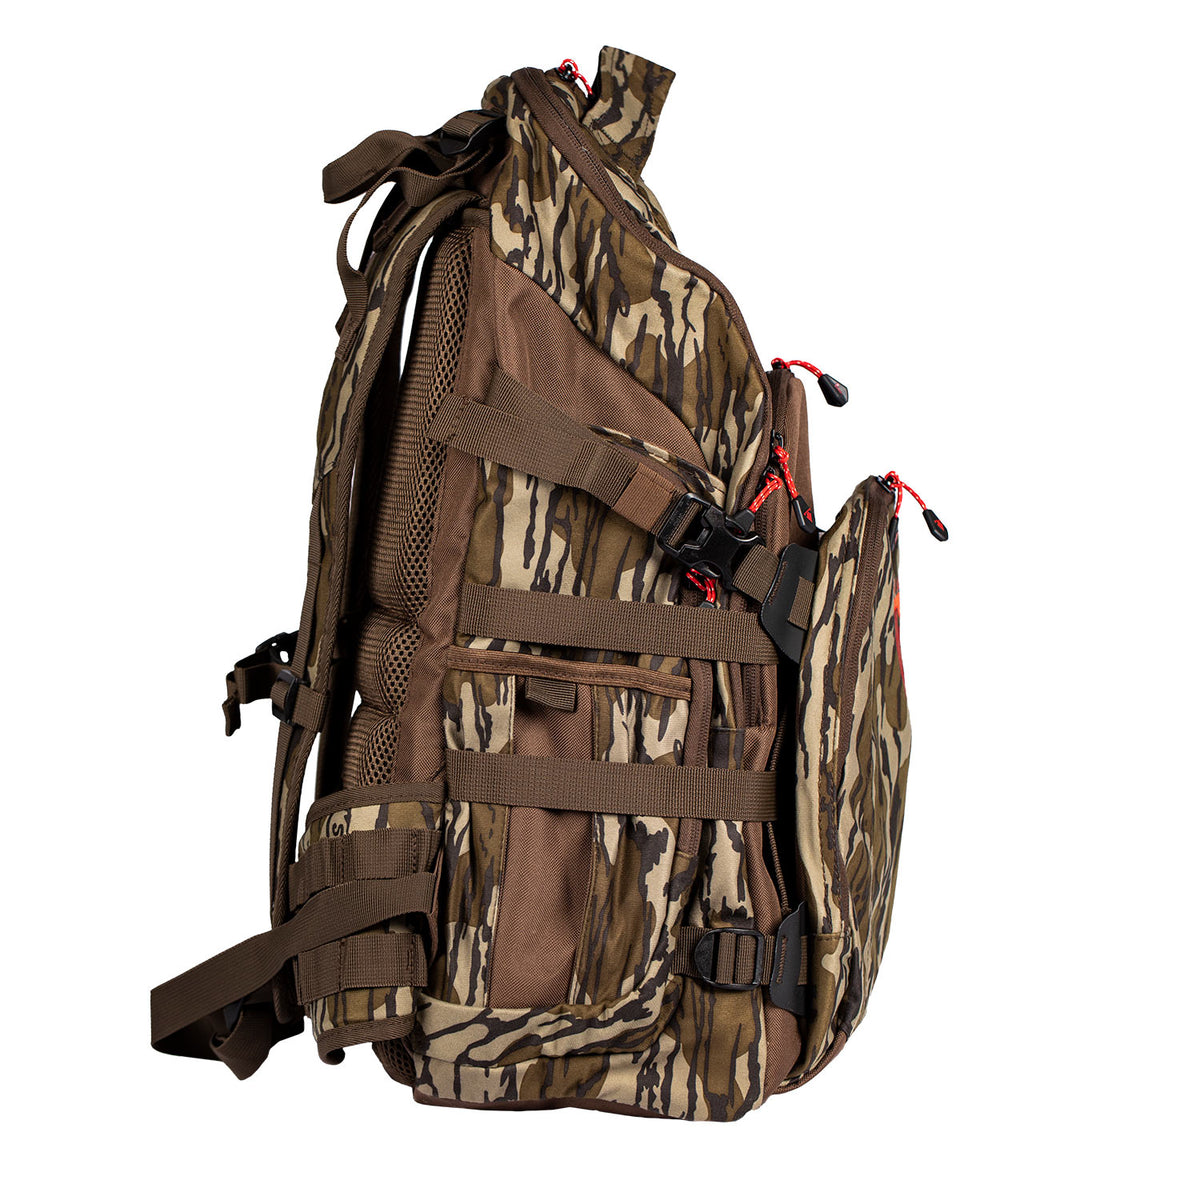 Trophyline® Packs and Backpacks for Saddle Hunting